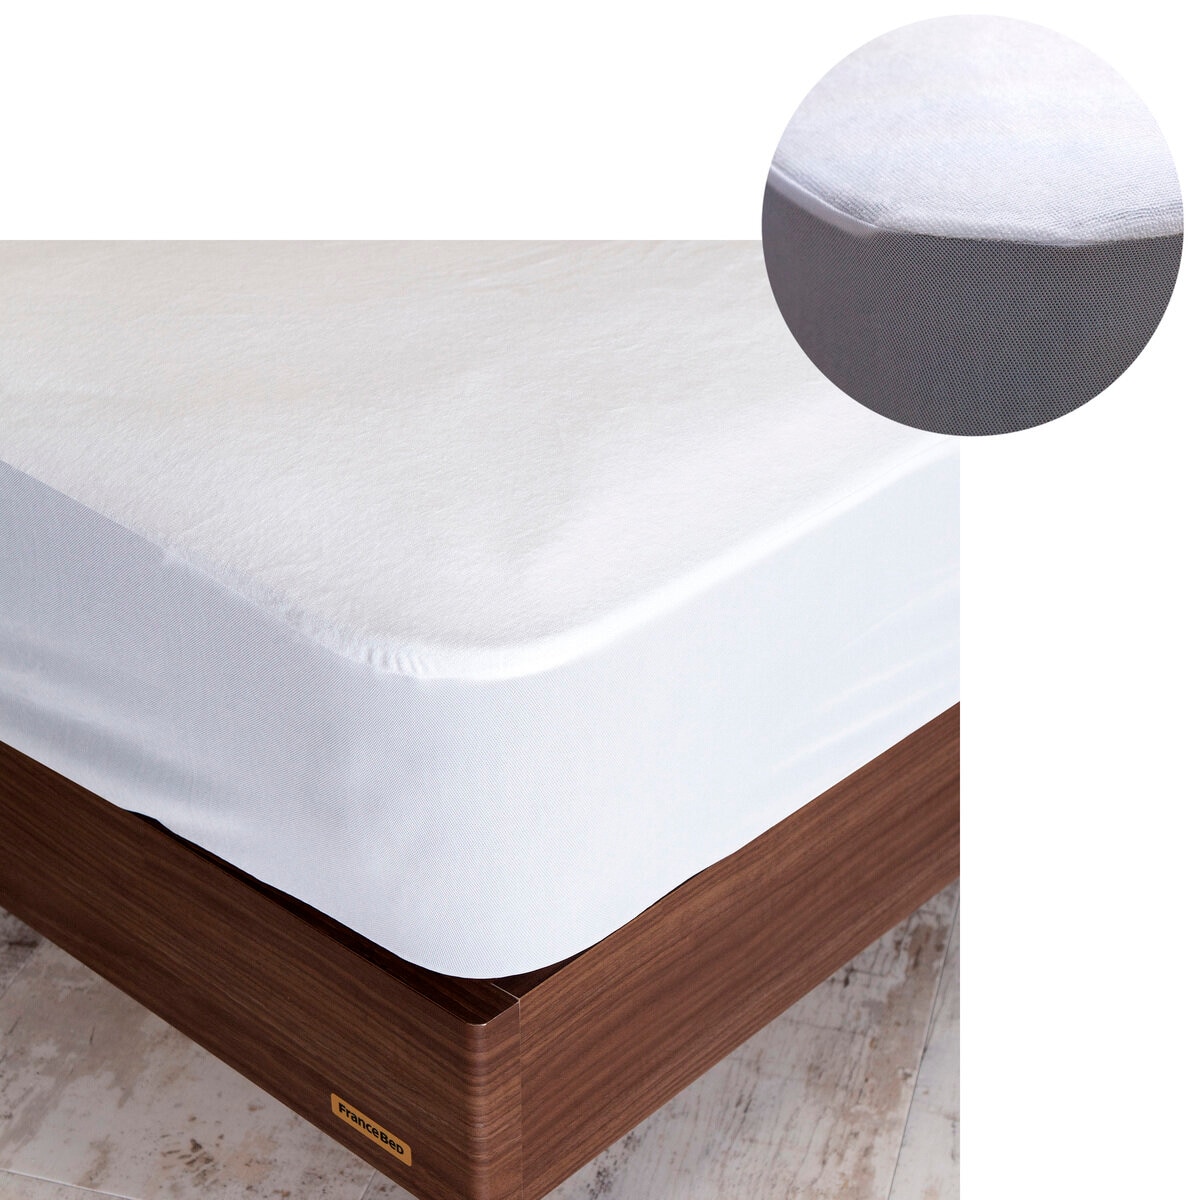 Protect a Bed マットレスプロテクター ダブル